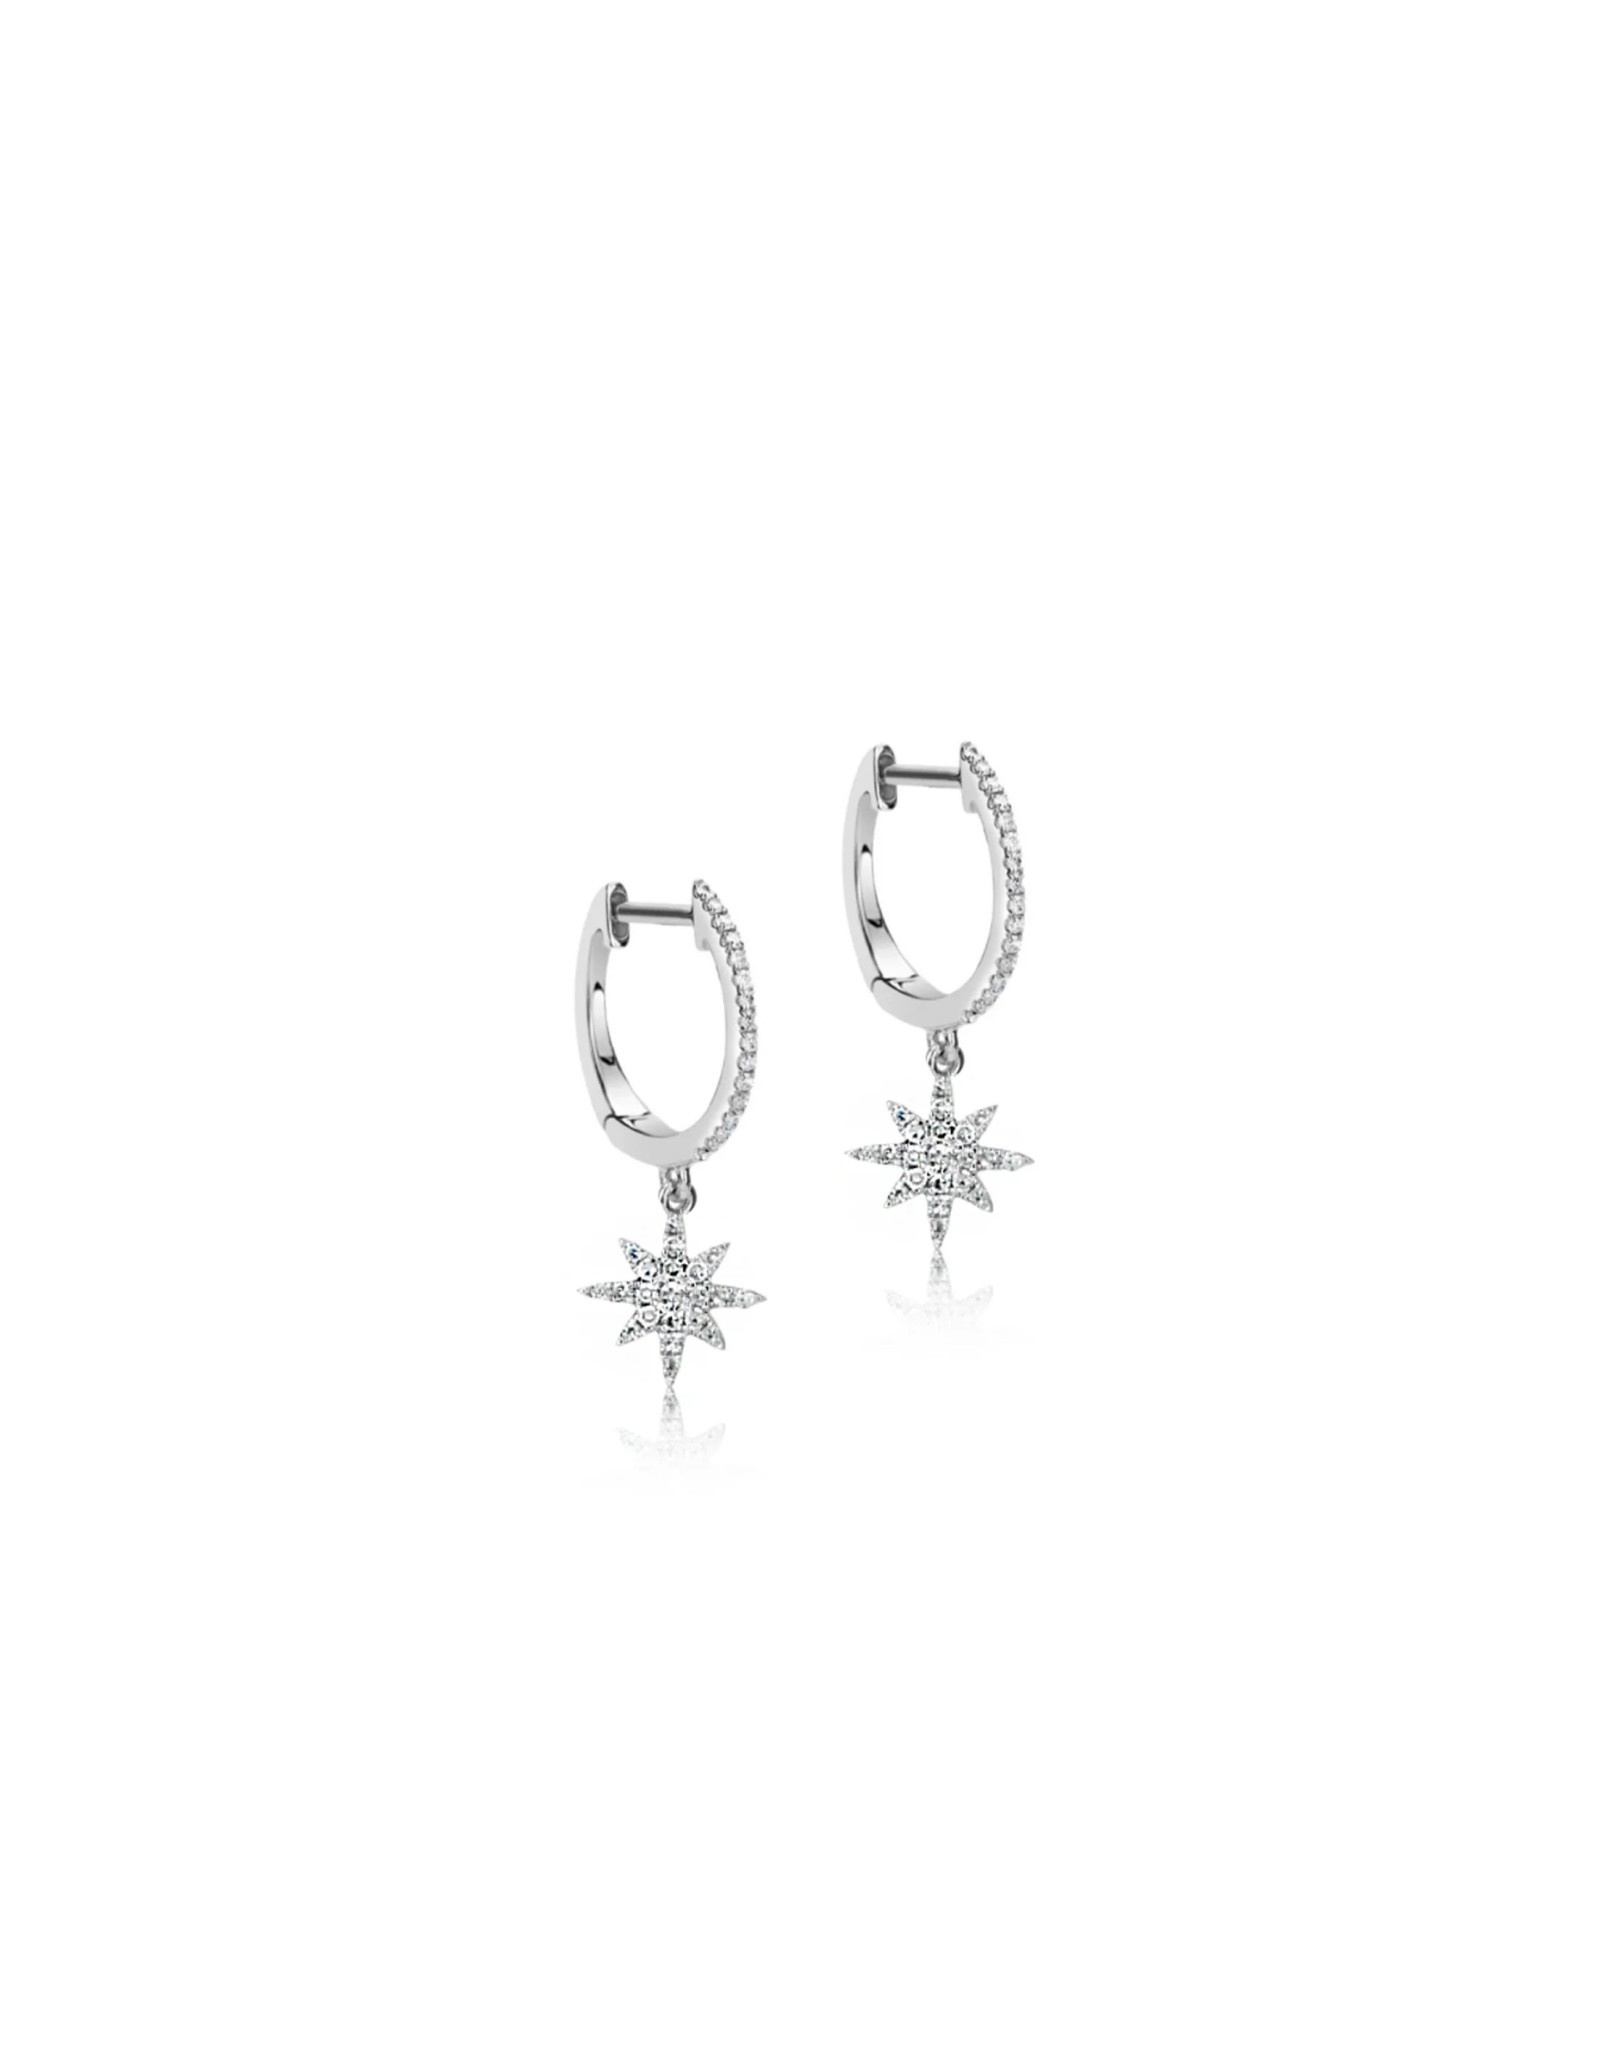 Meira T 14kt White Gold Diamond Starburst Earrings